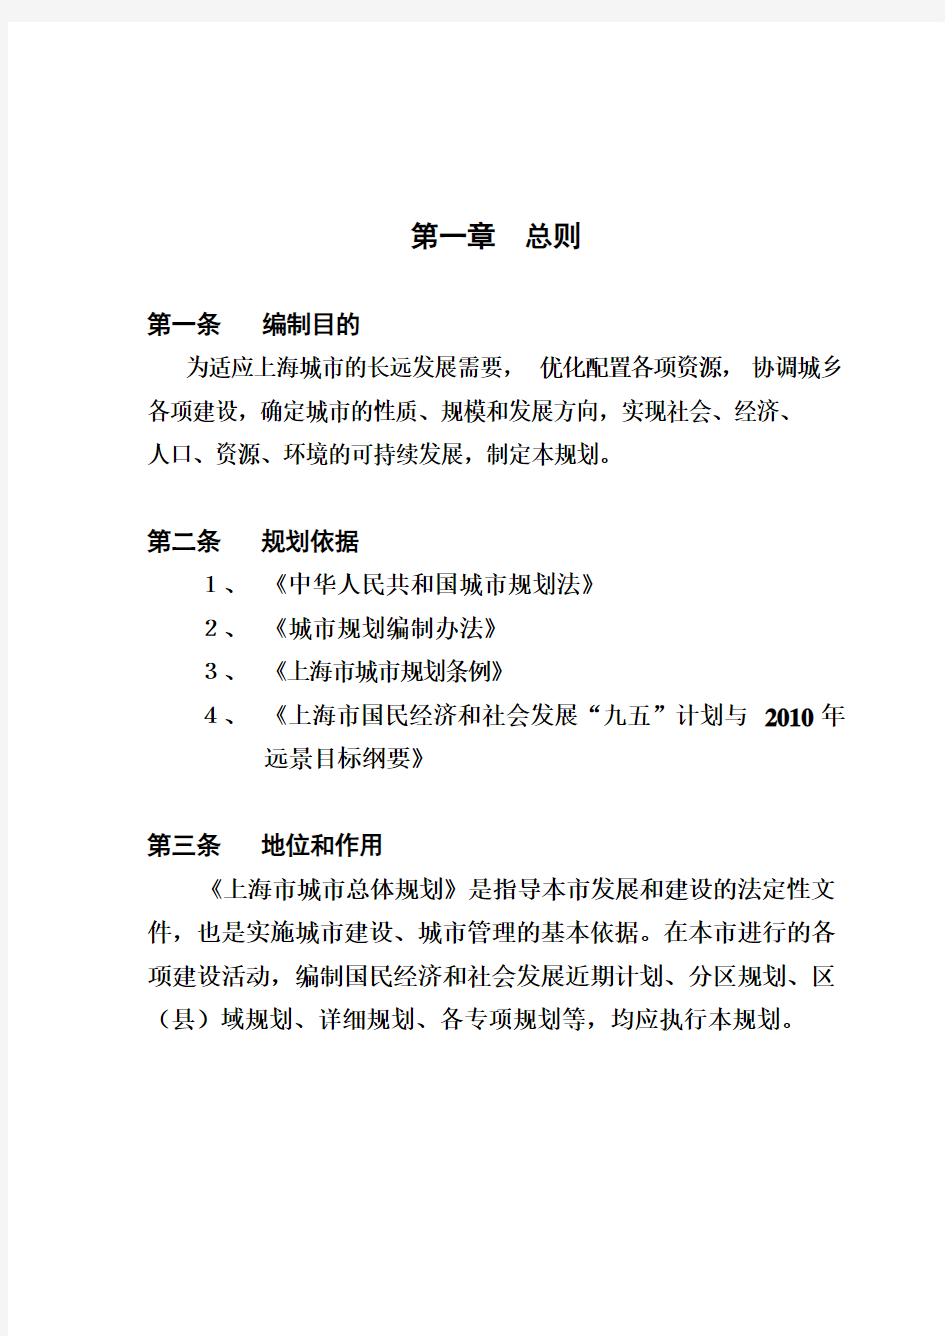 上海市总体综合规划文本正文